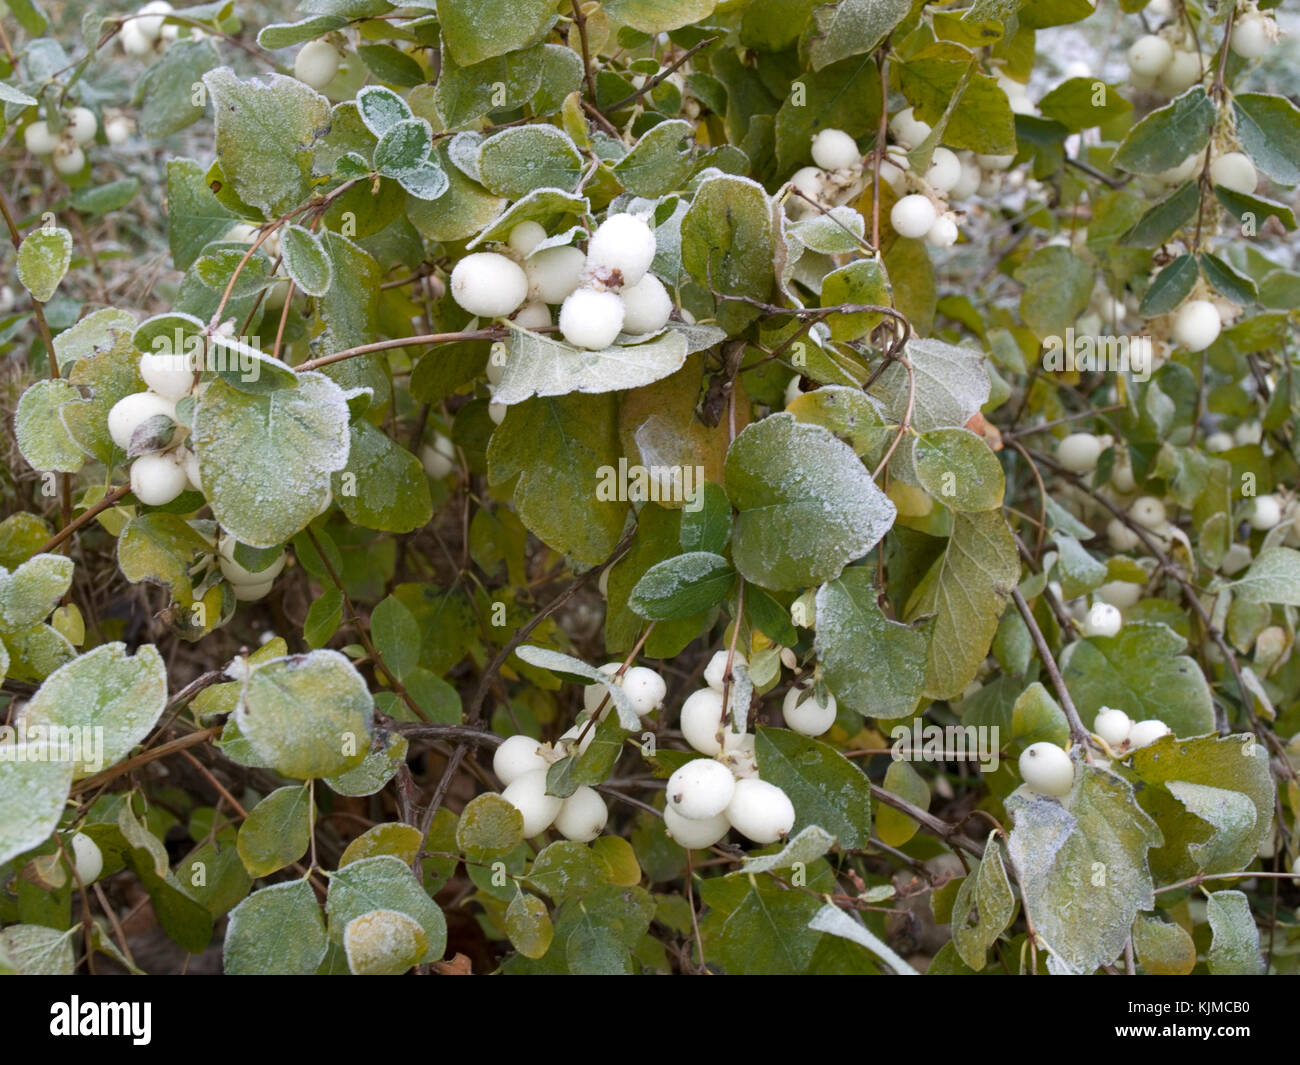 Snowberry shrub in late autumn Stock Photo